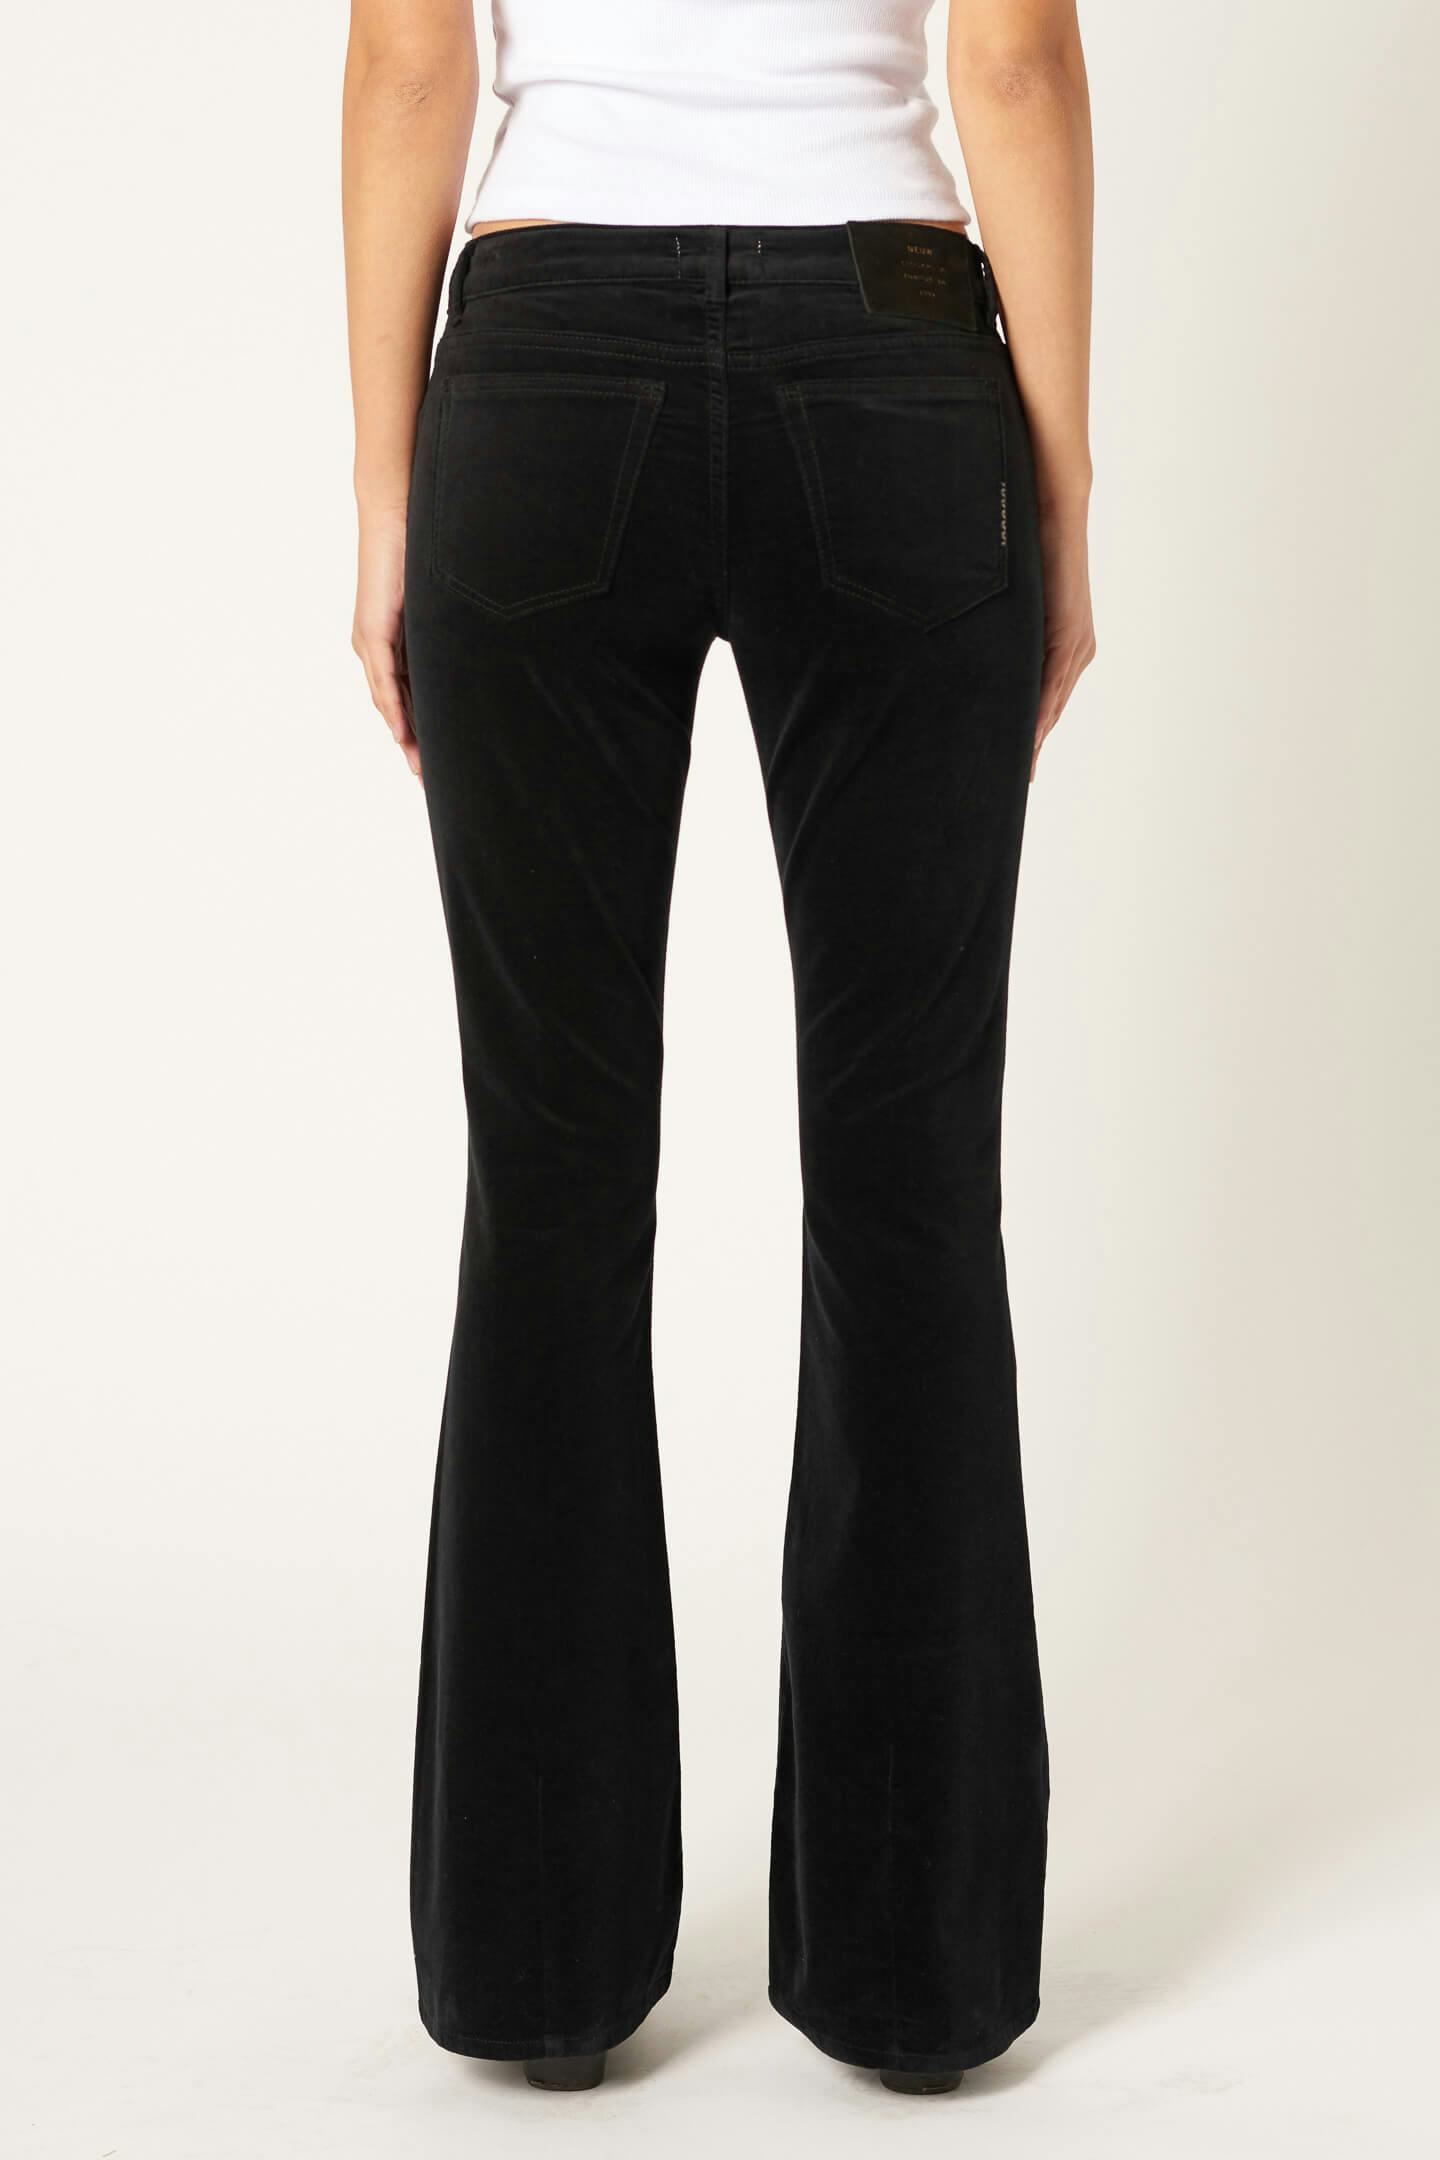 Devon Kick - Italian Velvet Neuw dark black womens-jeans 